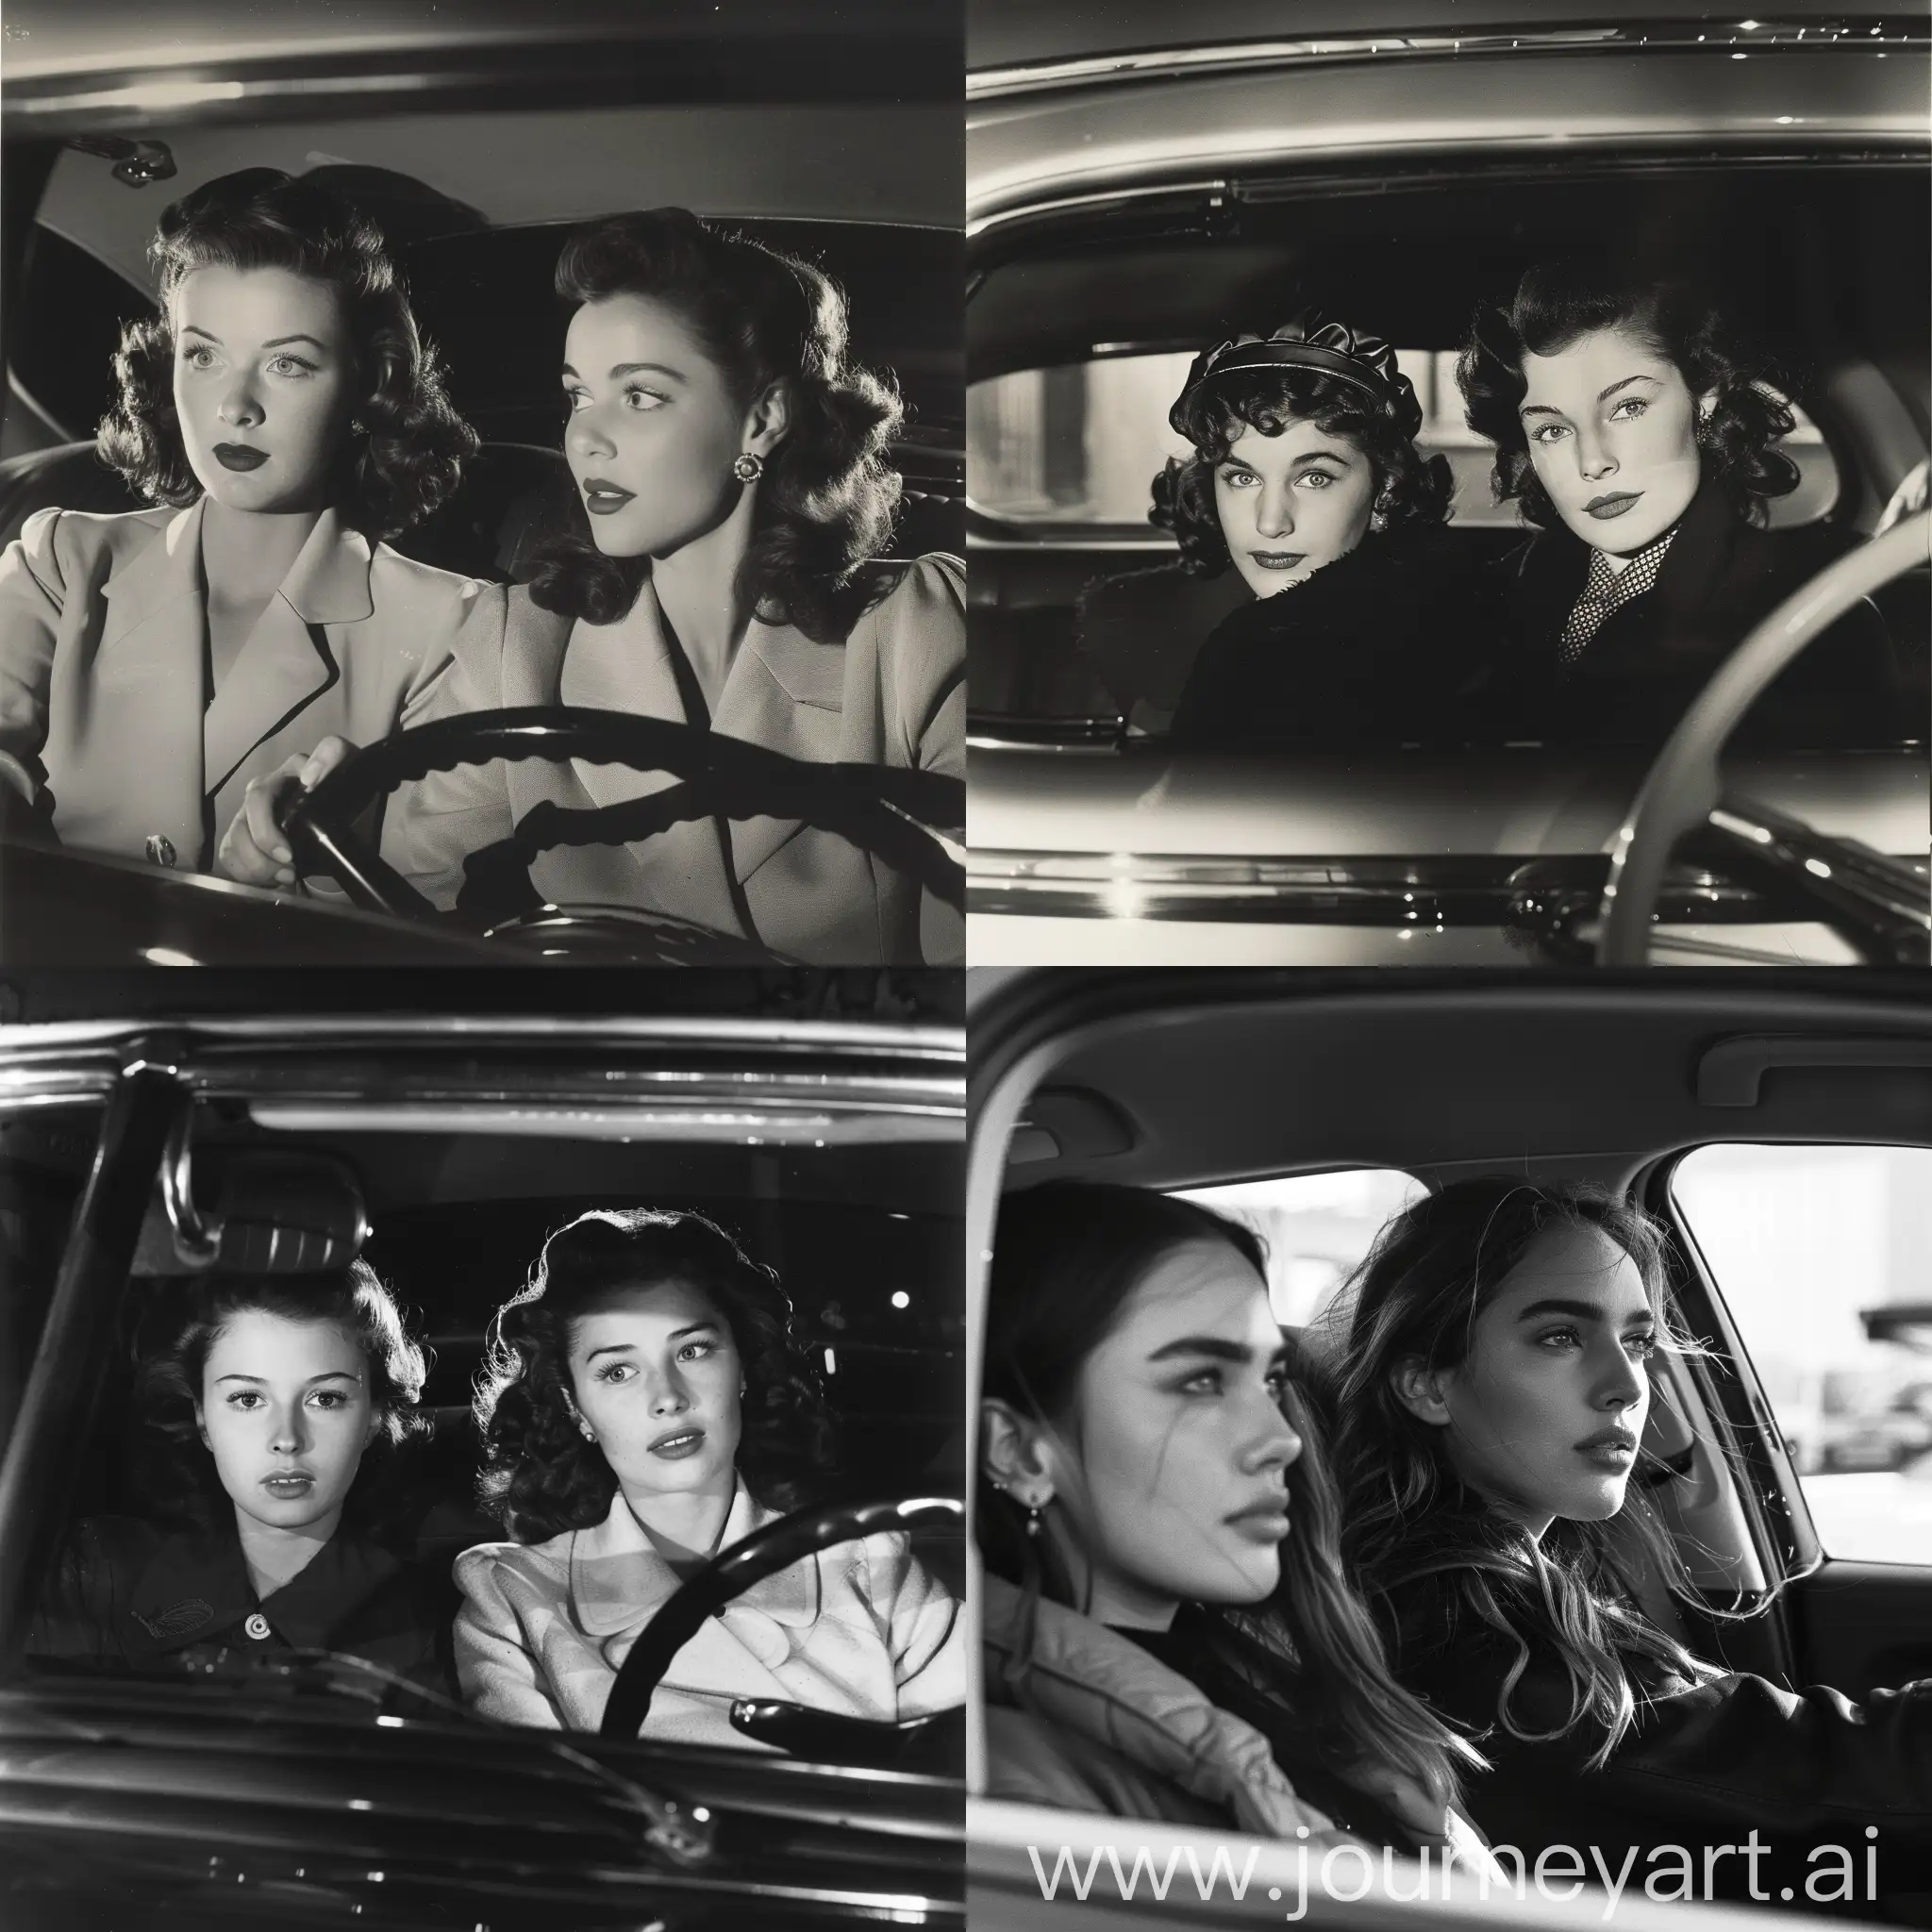 Two women in a car